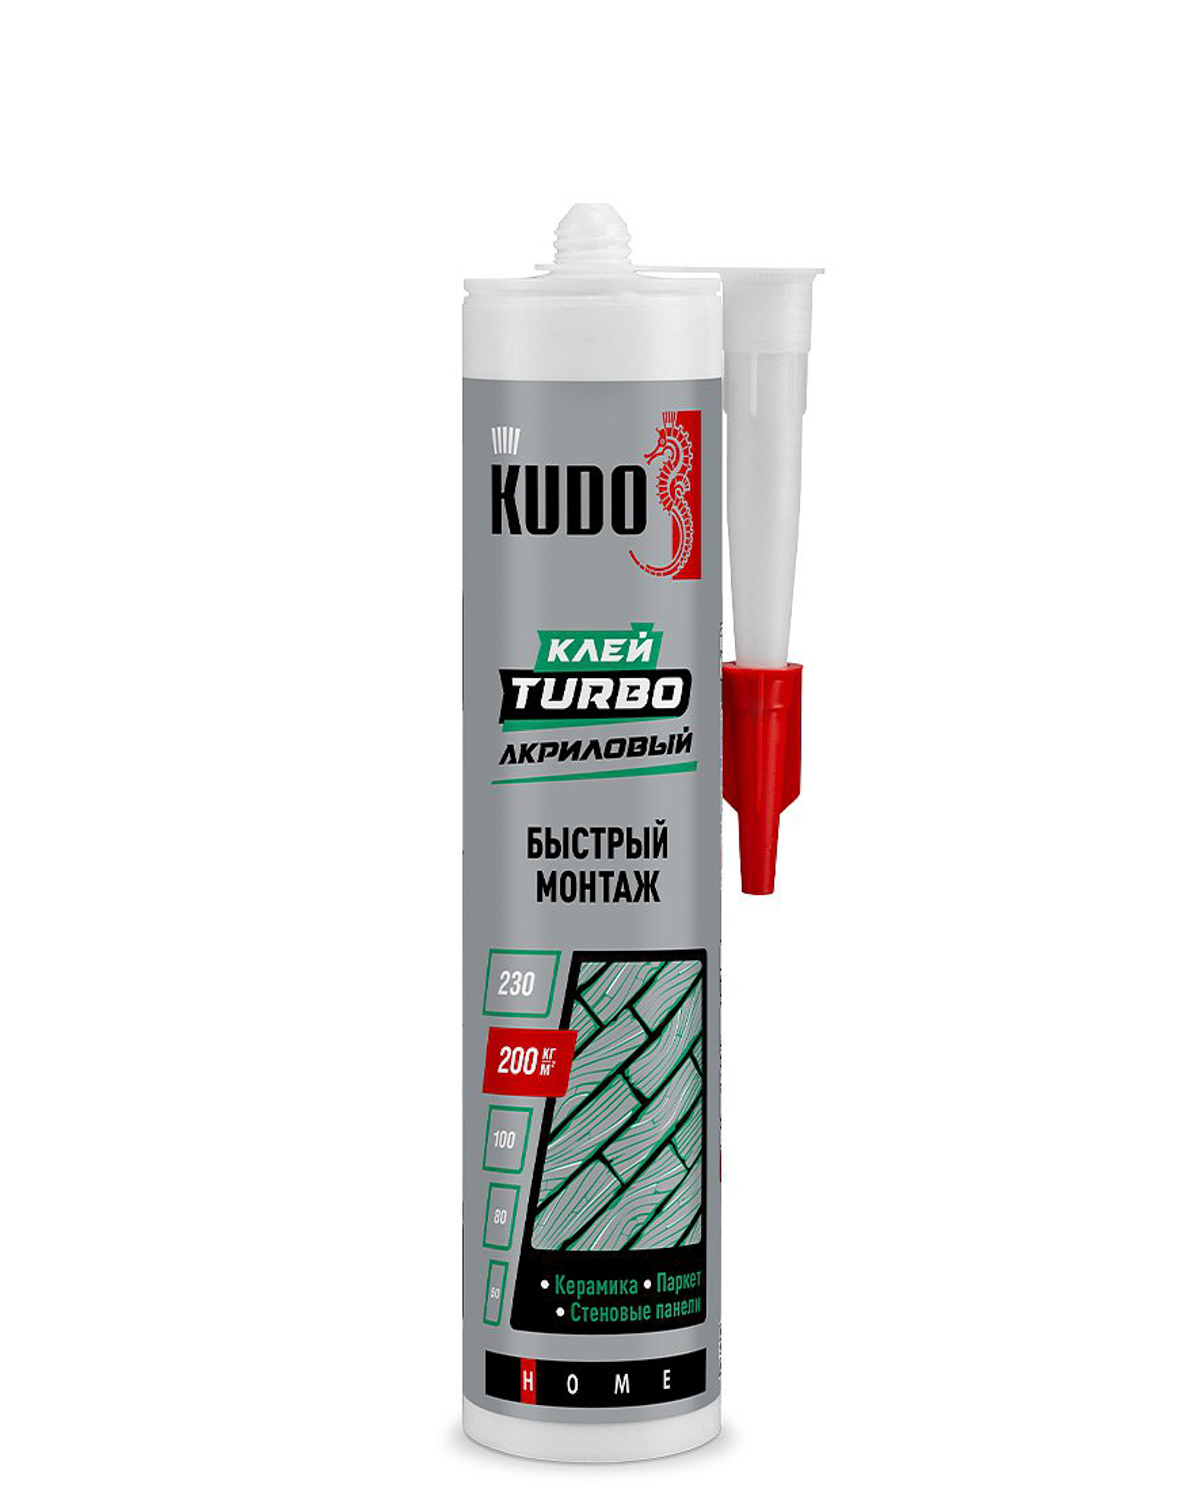 Клей Kudo Turbo для быстрого монтажа универсальный белый KBK-331 280 мл универсальный цианоакрилатный супер клей kudo